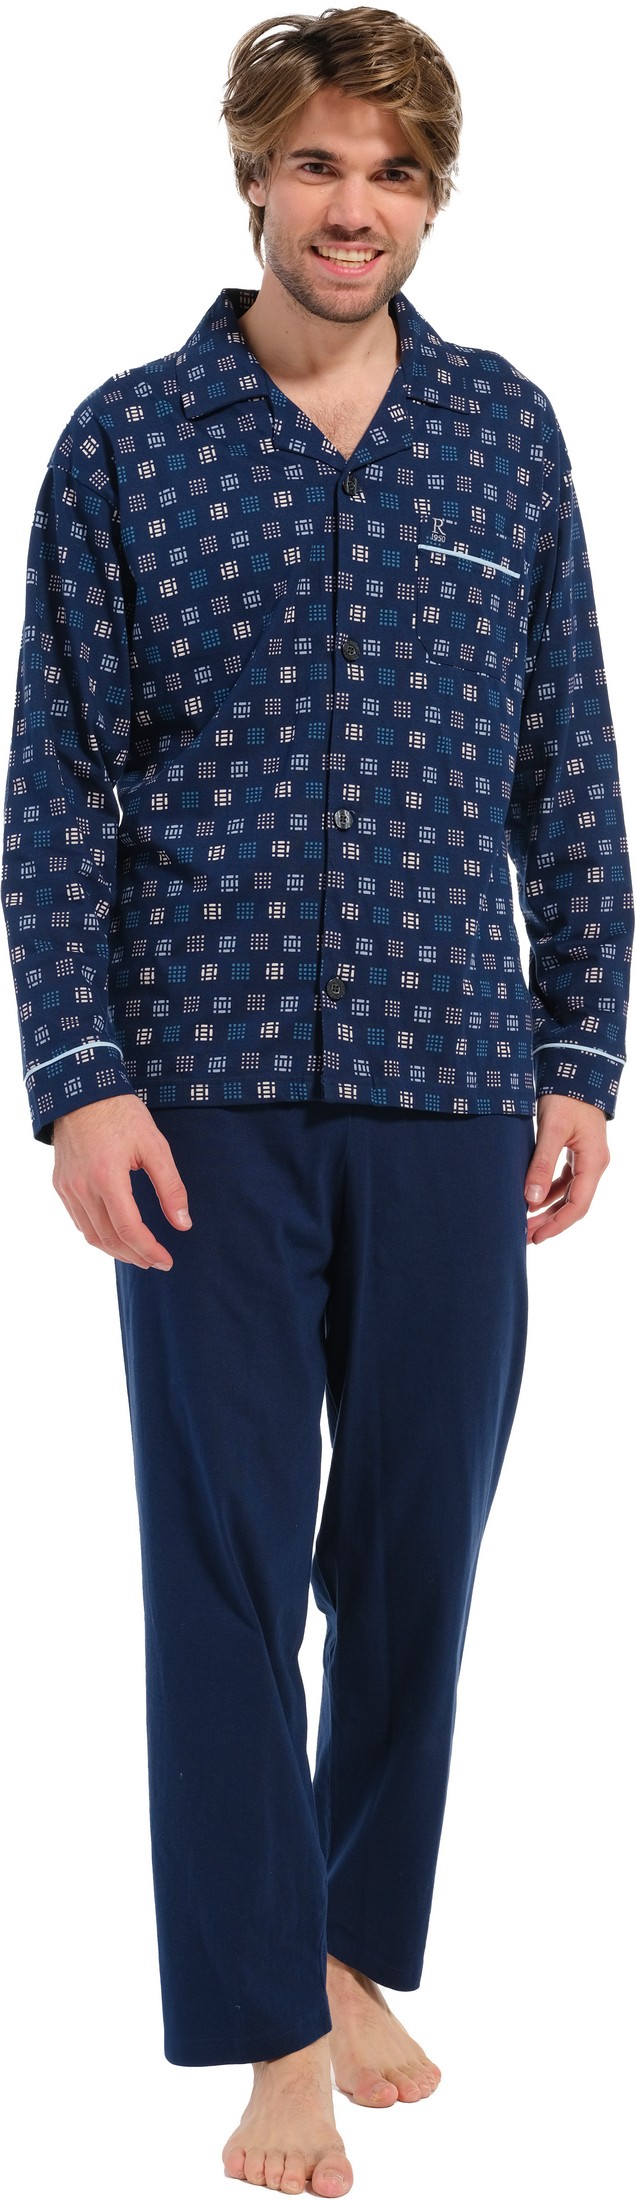 Robson heren pyjama doorknoop 27232-716-6 - Blauw - L/52